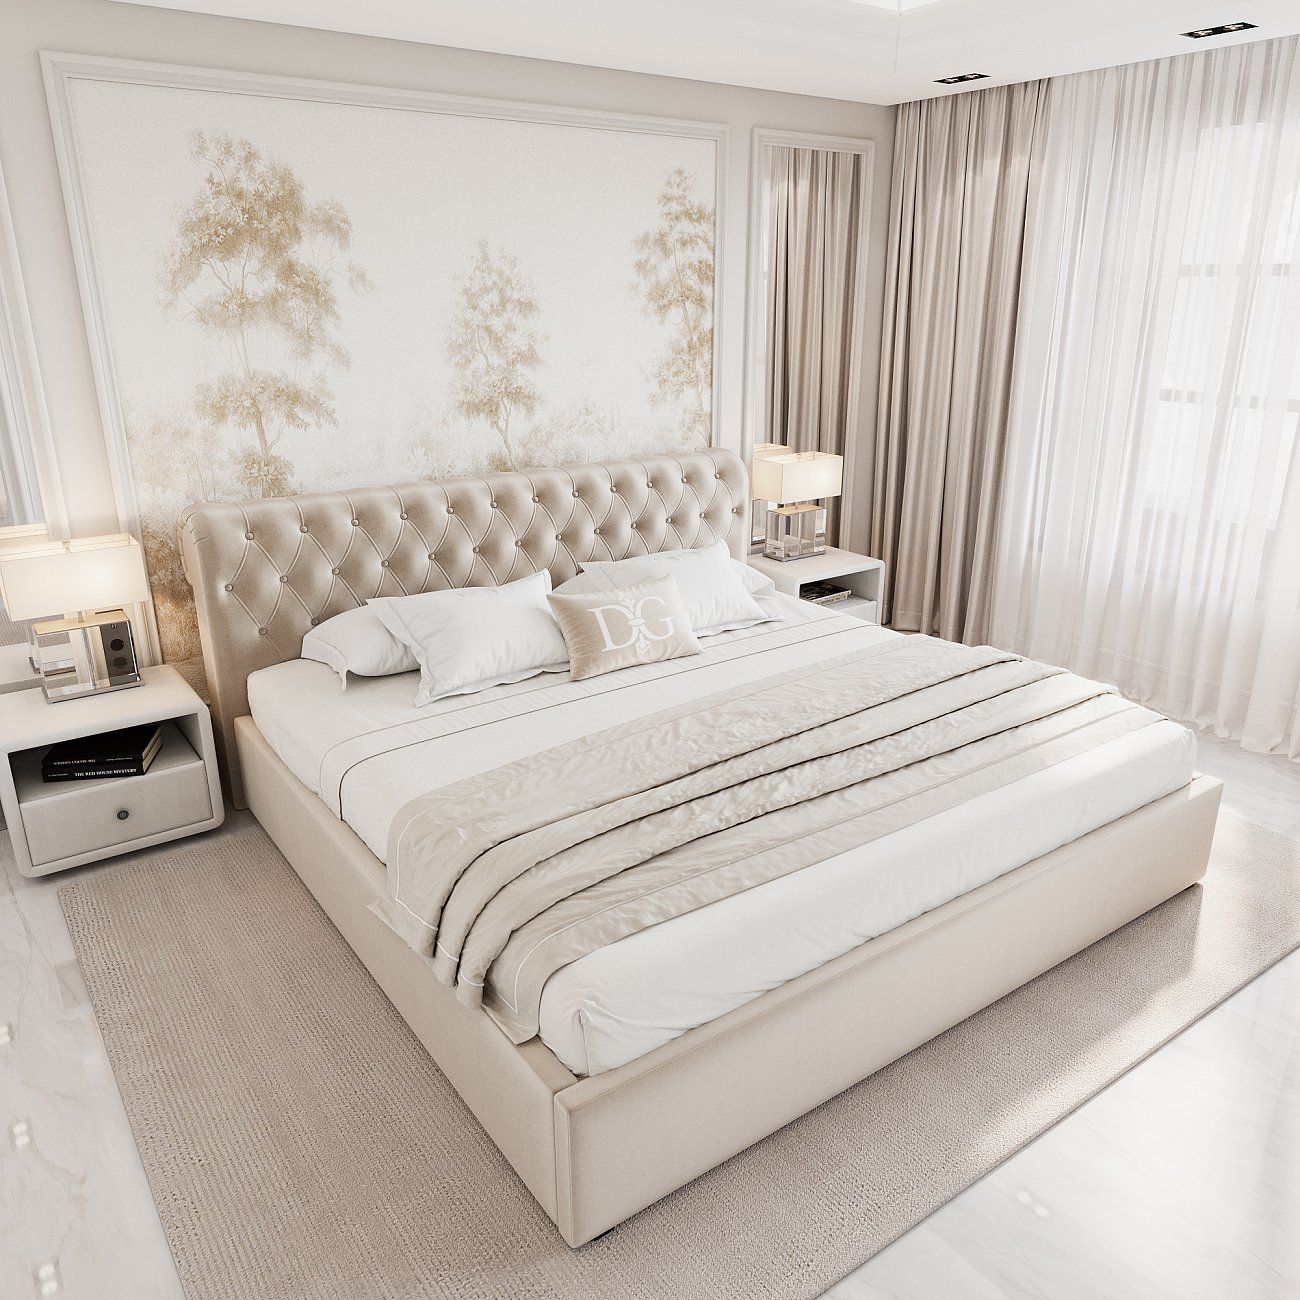 Кровать двуспальная с мягким изголовьем 160х200 см морская волна Sweet Dreams